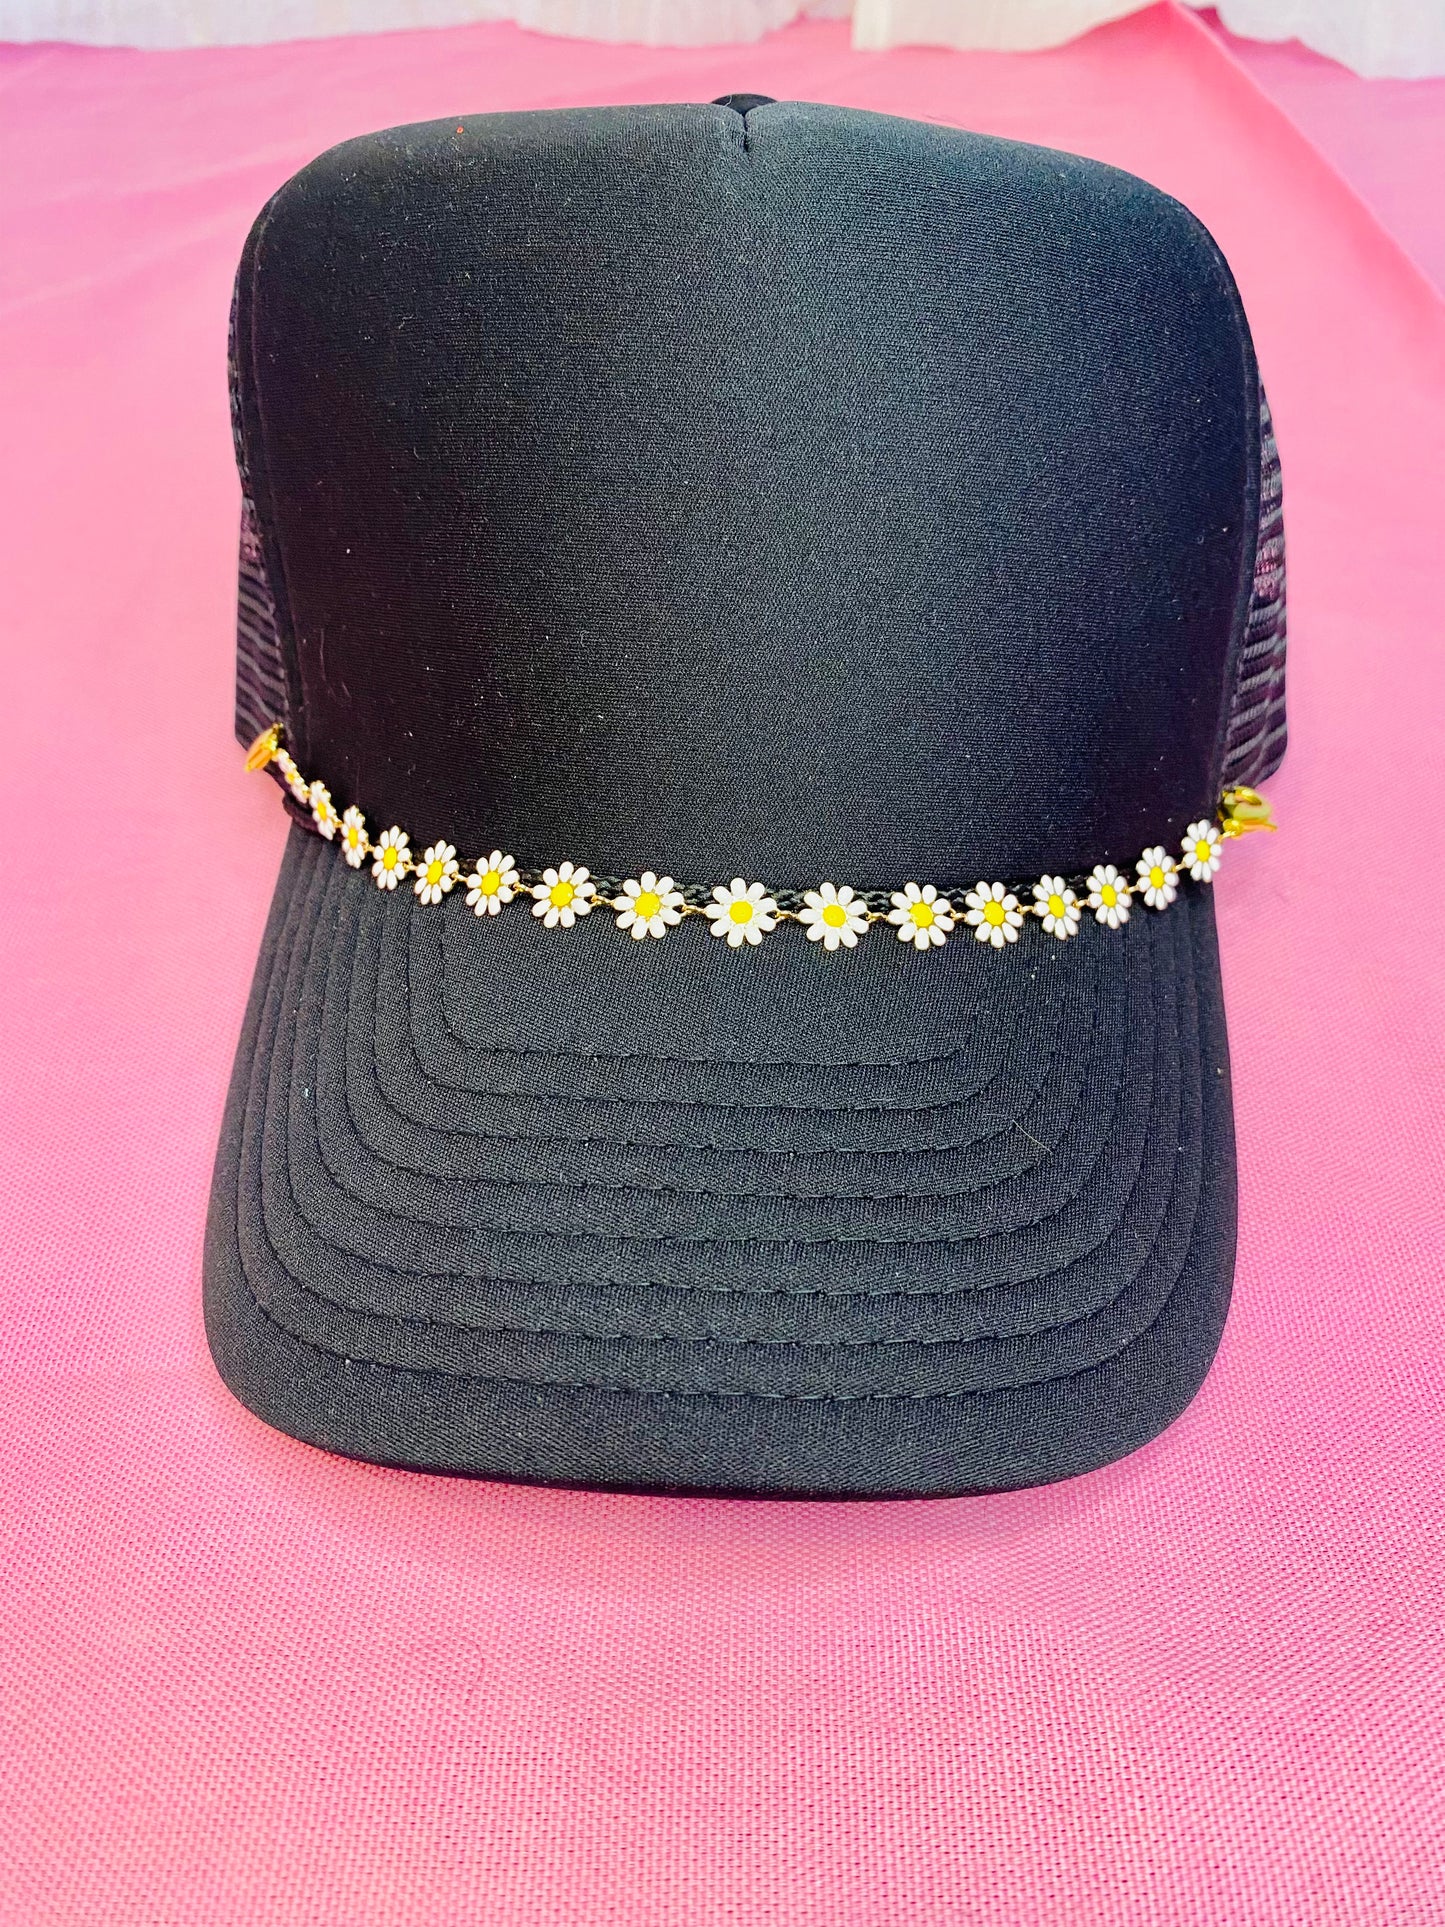 Decorative hat chain